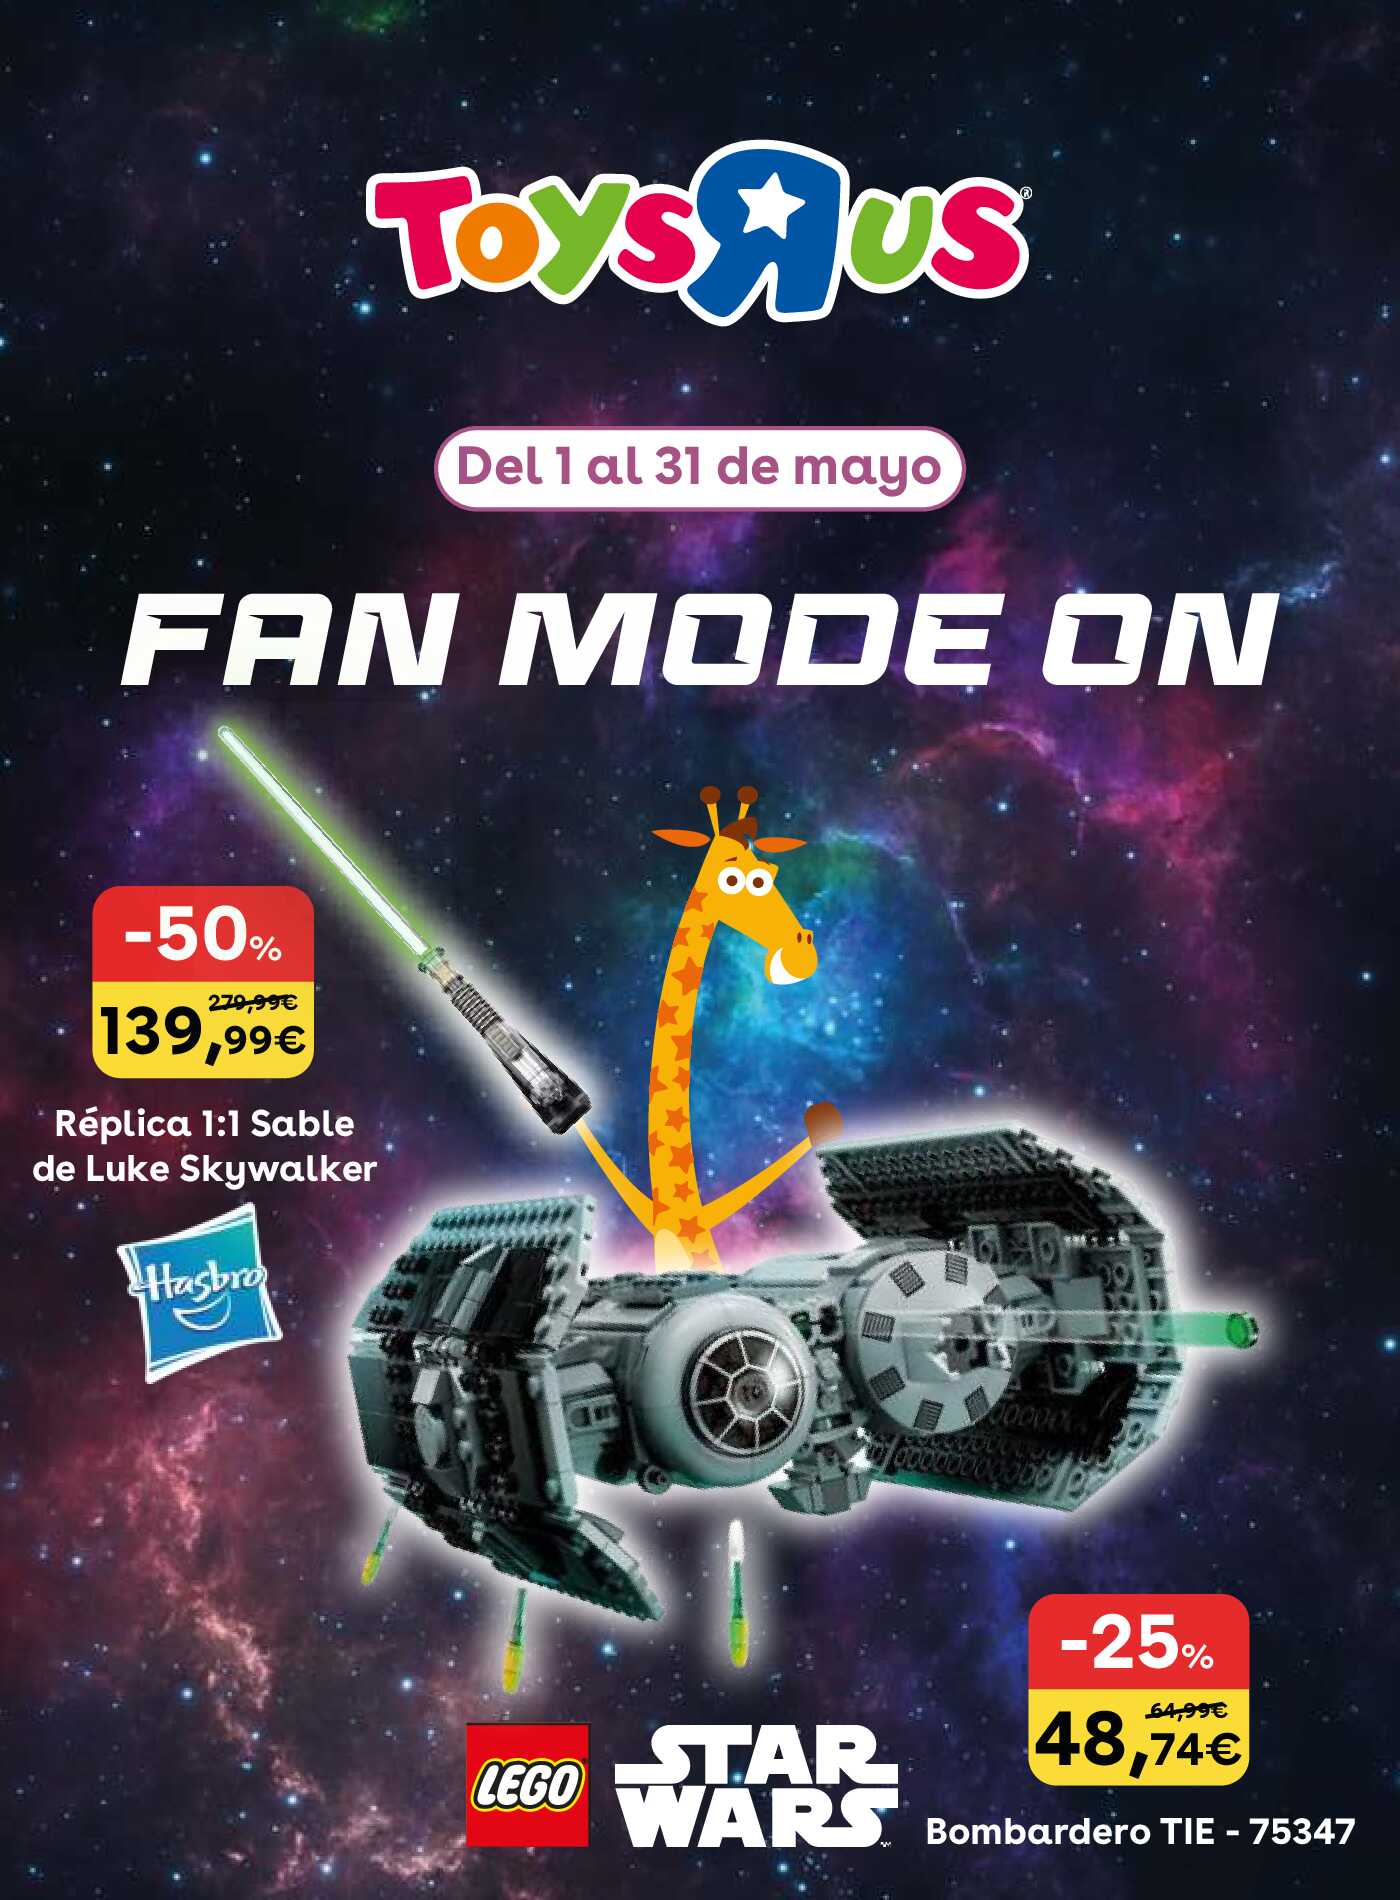 Fan mode ON Toys R Us. Página 01